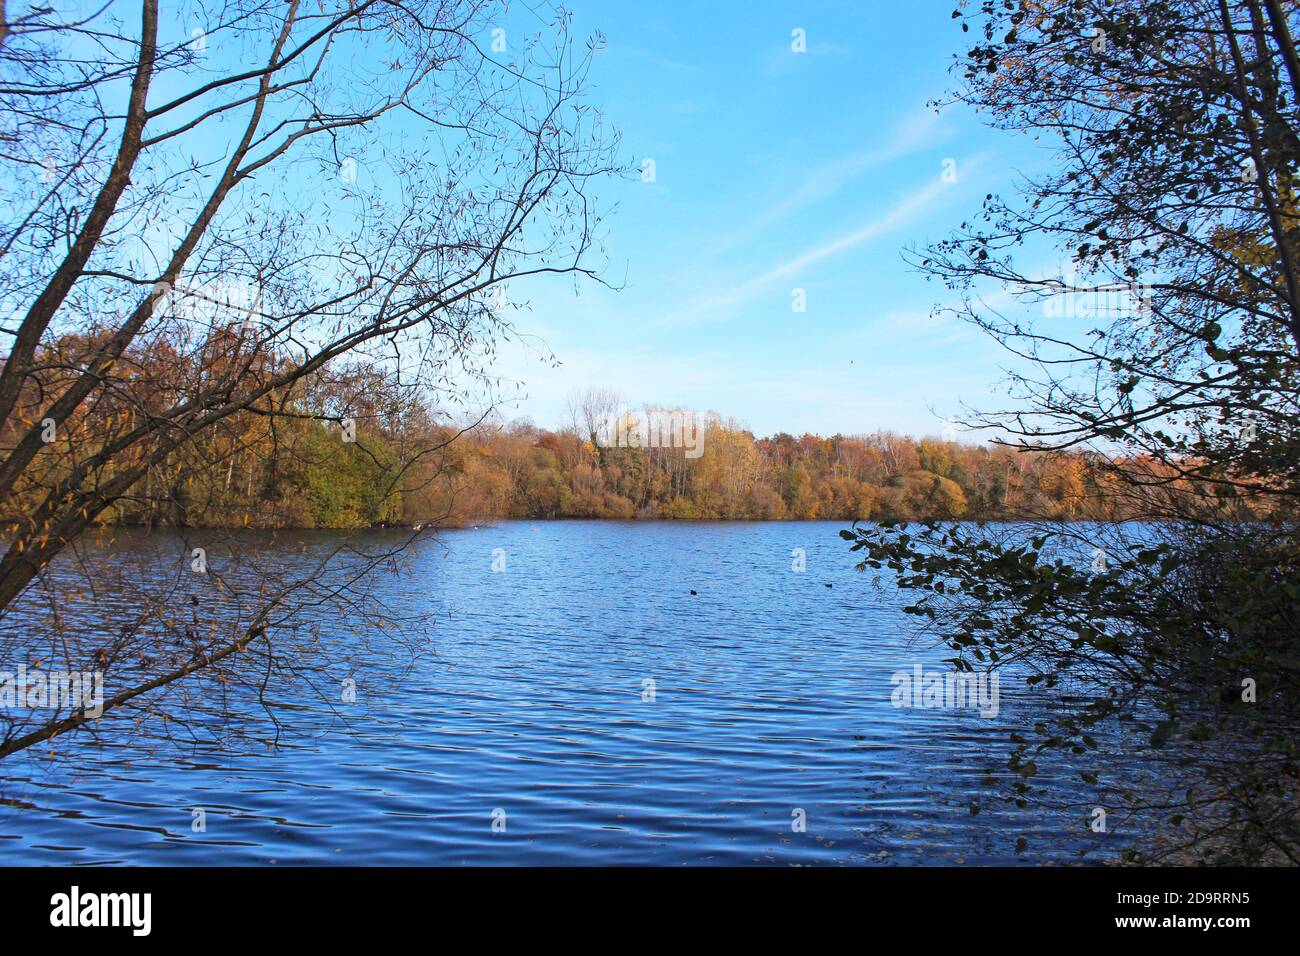 Magnifique paysage du parc aquatique Chorlton en Angleterre, grand lac bleu calme, ciel bleu, arbres d'automne sur les rives Banque D'Images